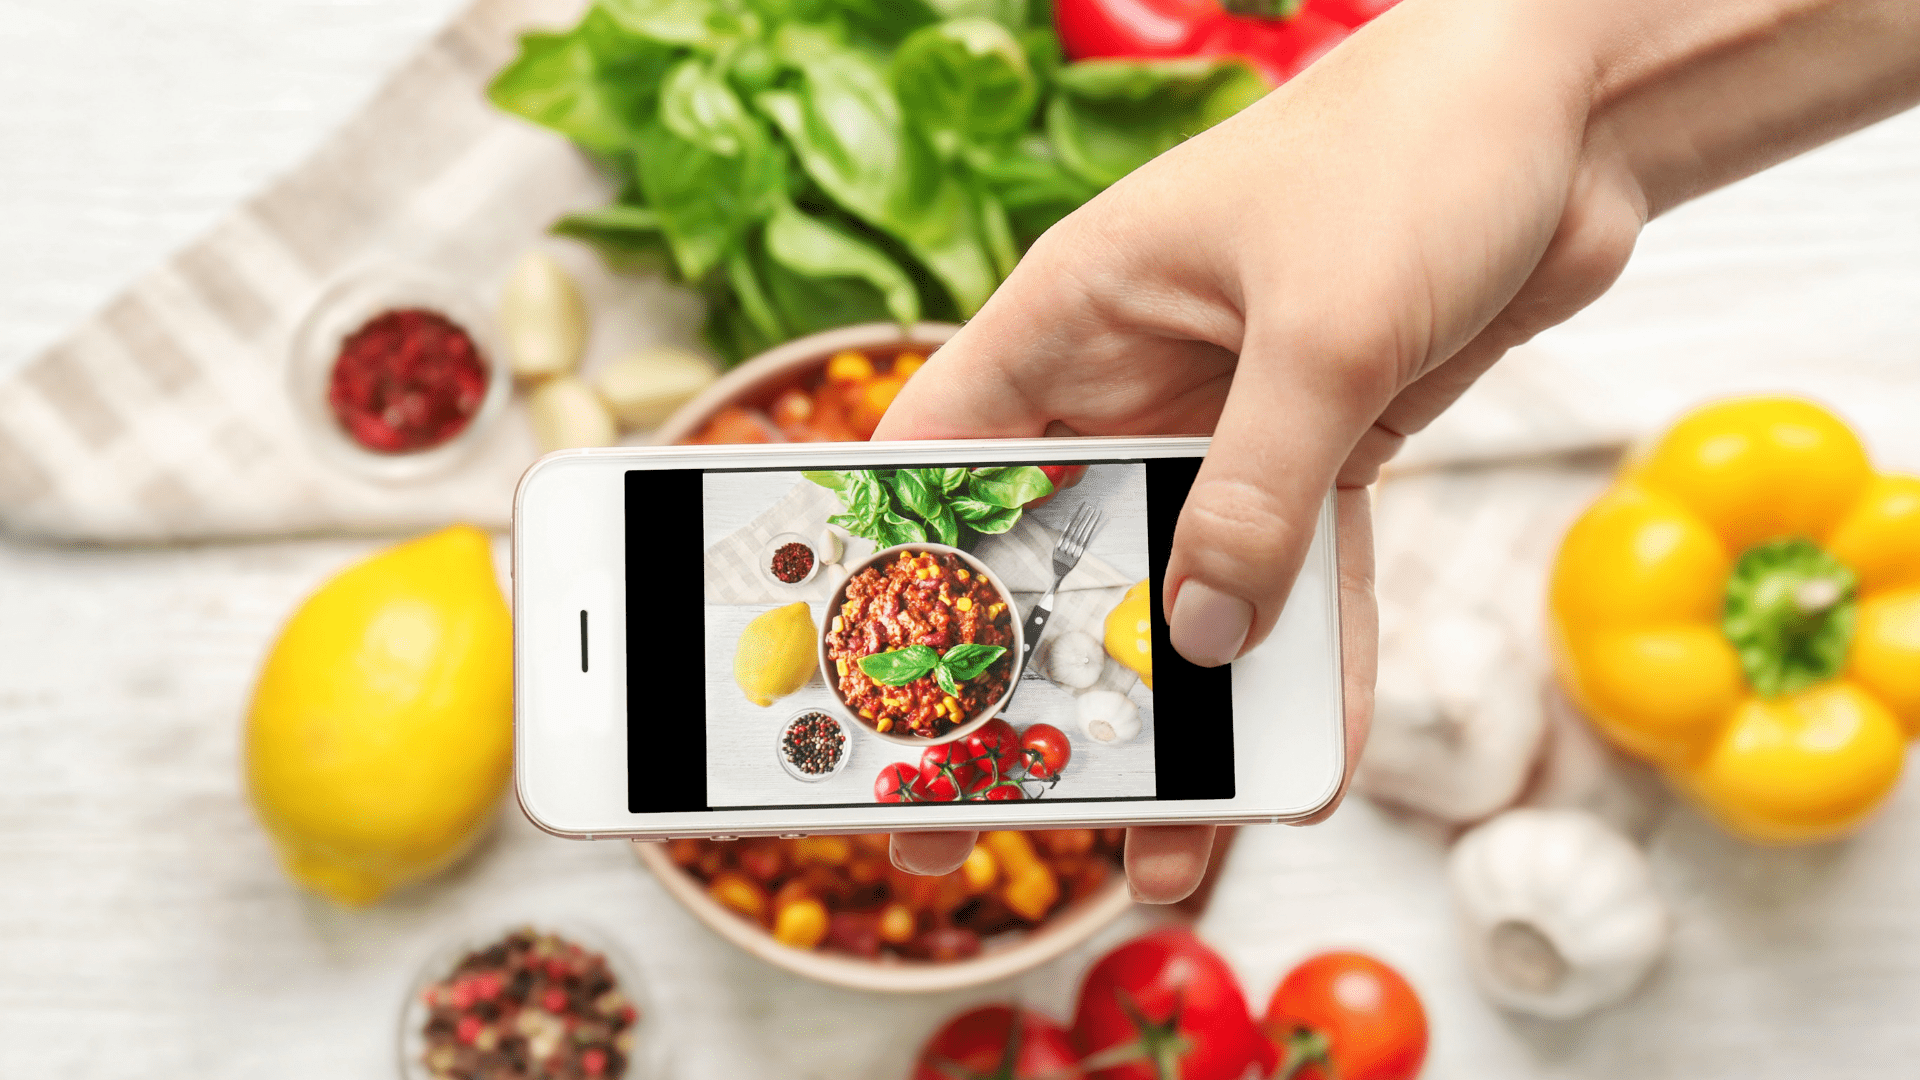 iemands hand met smartphone die een foto maakt van een kom pasta met een gele paprika, citroen, tomaten, knoflook, basilicum, zwarte pepers en vork eromheen